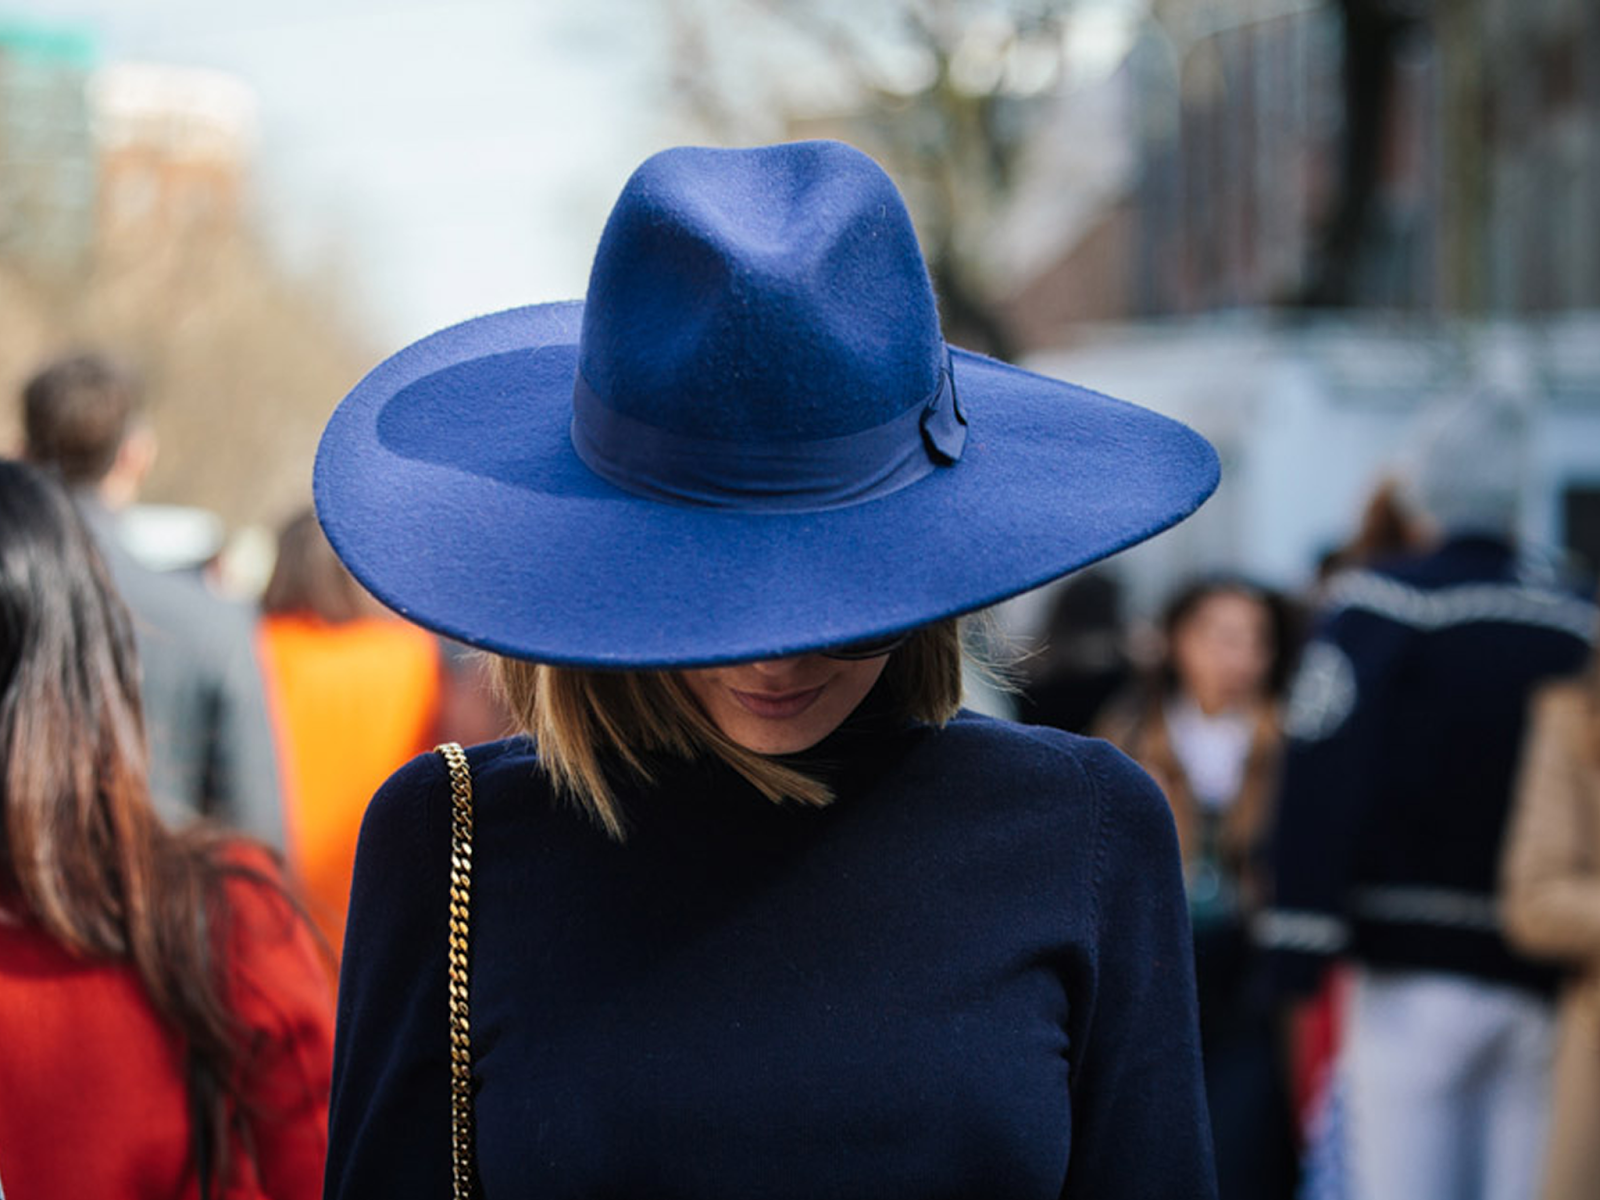 Джейн Эбберлайн шляпы. Шляпа Федора широкополая. Девушка в синей шляпе. Образ со шляпой женский. Шляпы на работе